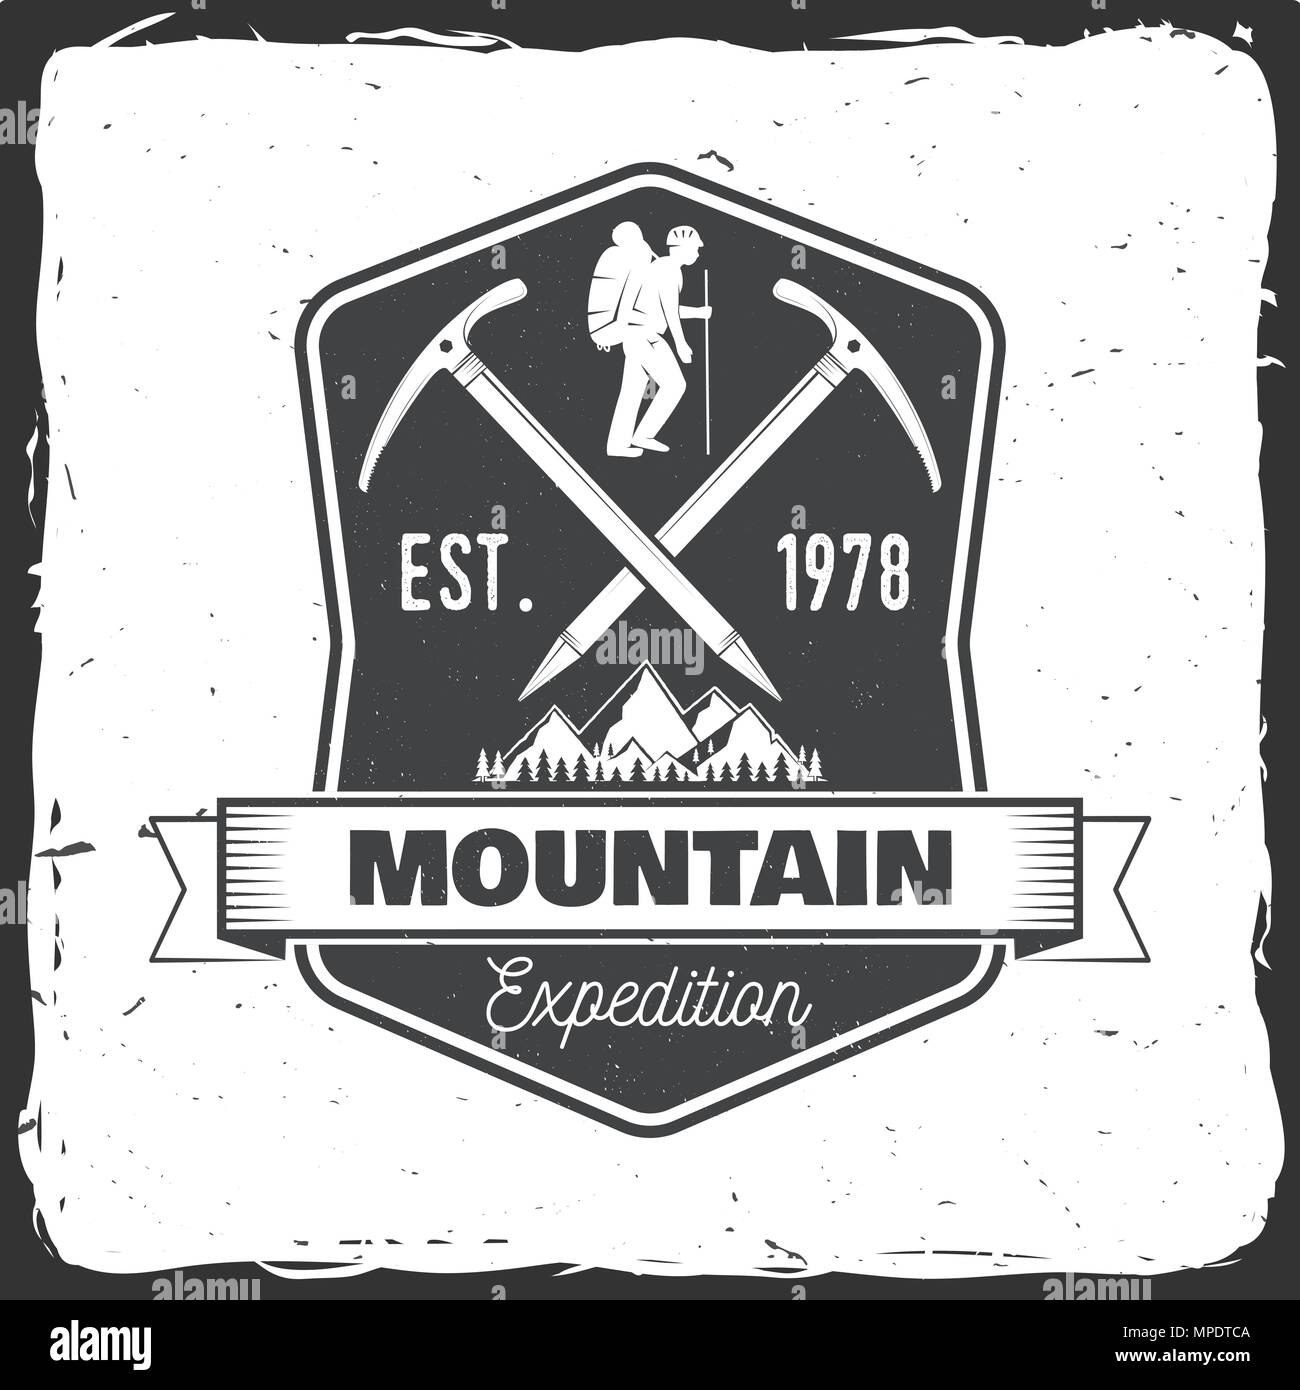 logo caccia montagna adatto per adesivi e serigrafia 3586541 Arte